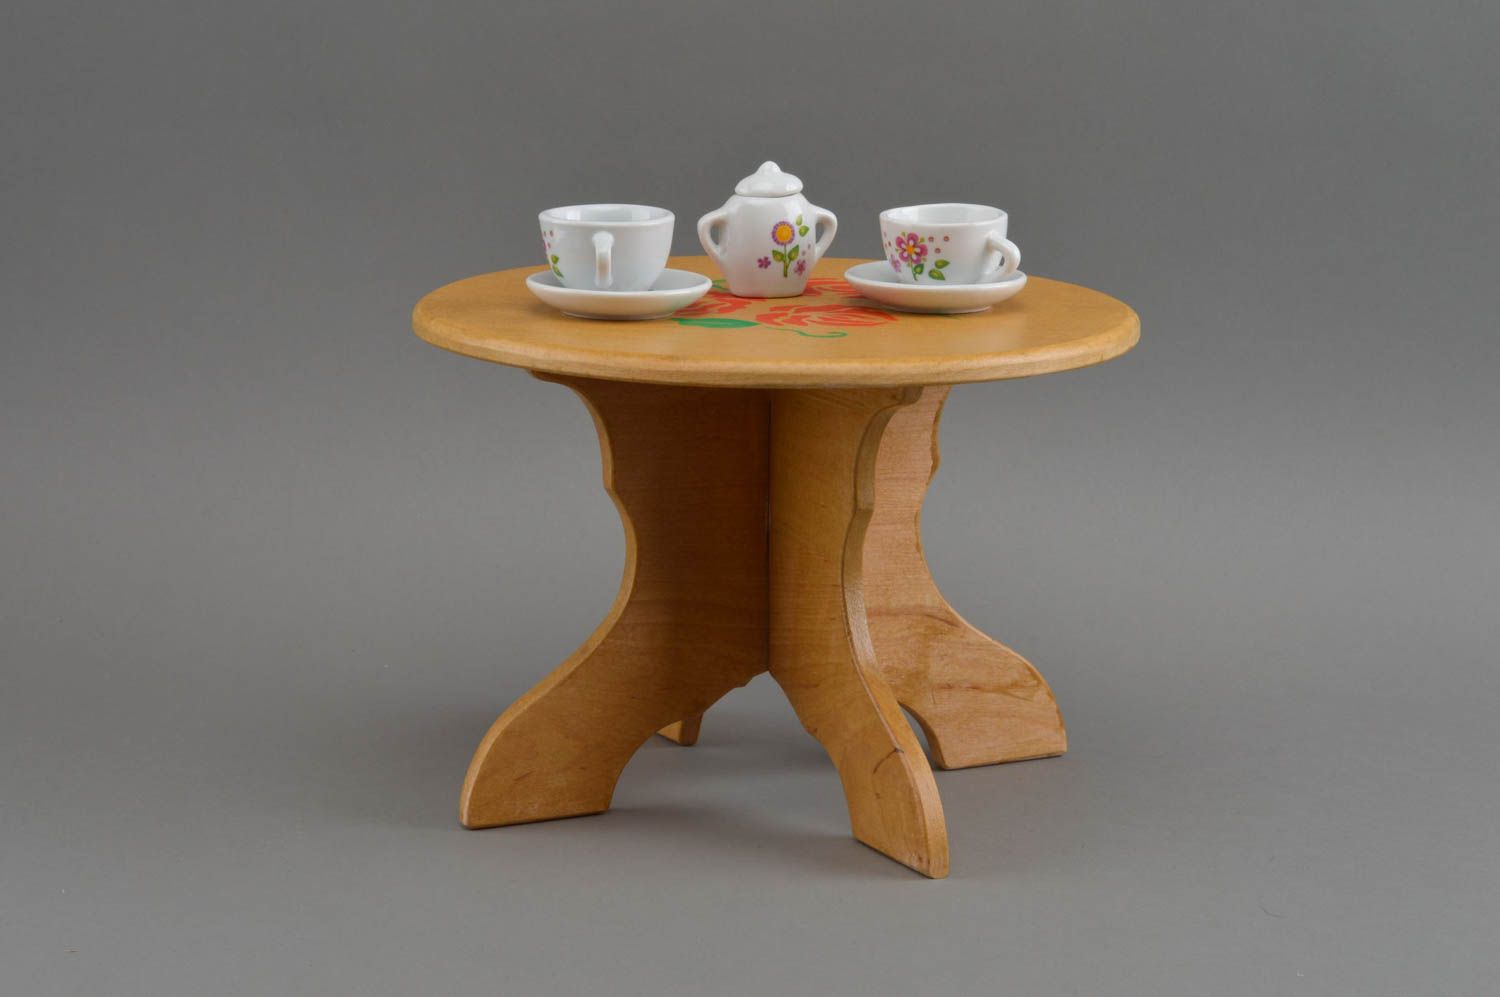 Кукольный стол из дерева круглый декоративный оригинальный ручной работы фото 1